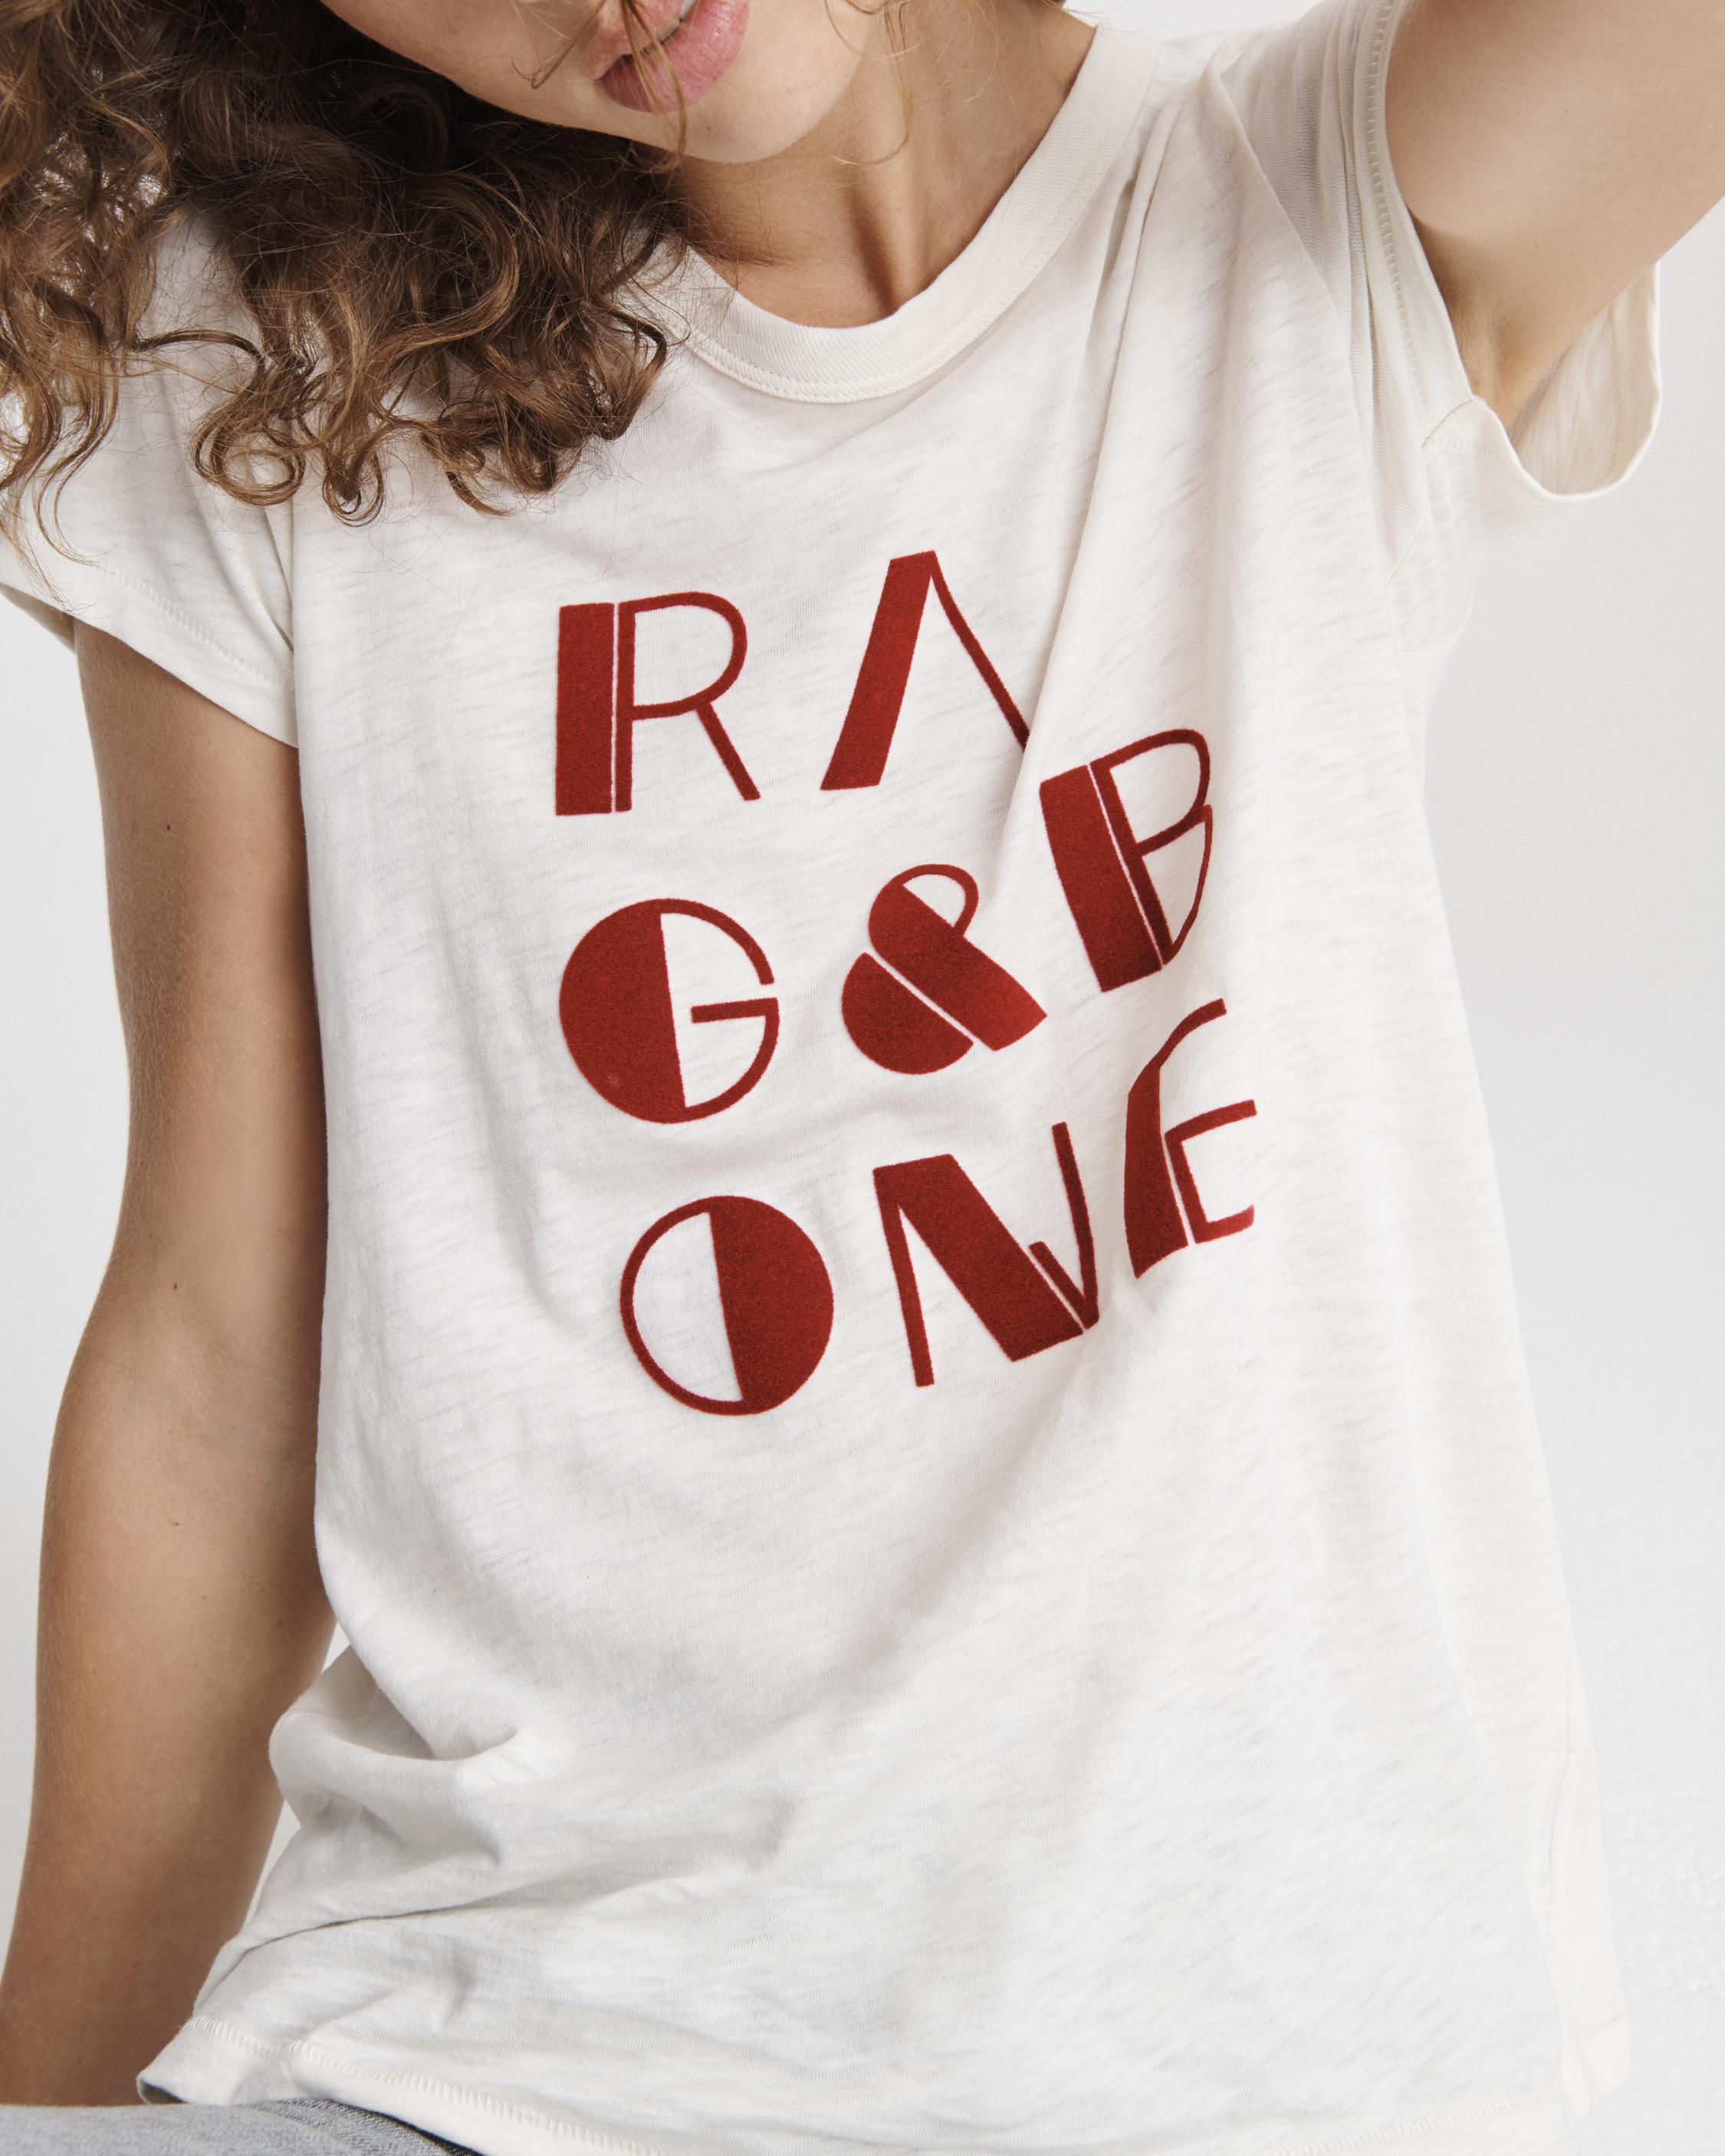 rag & bone t shirt